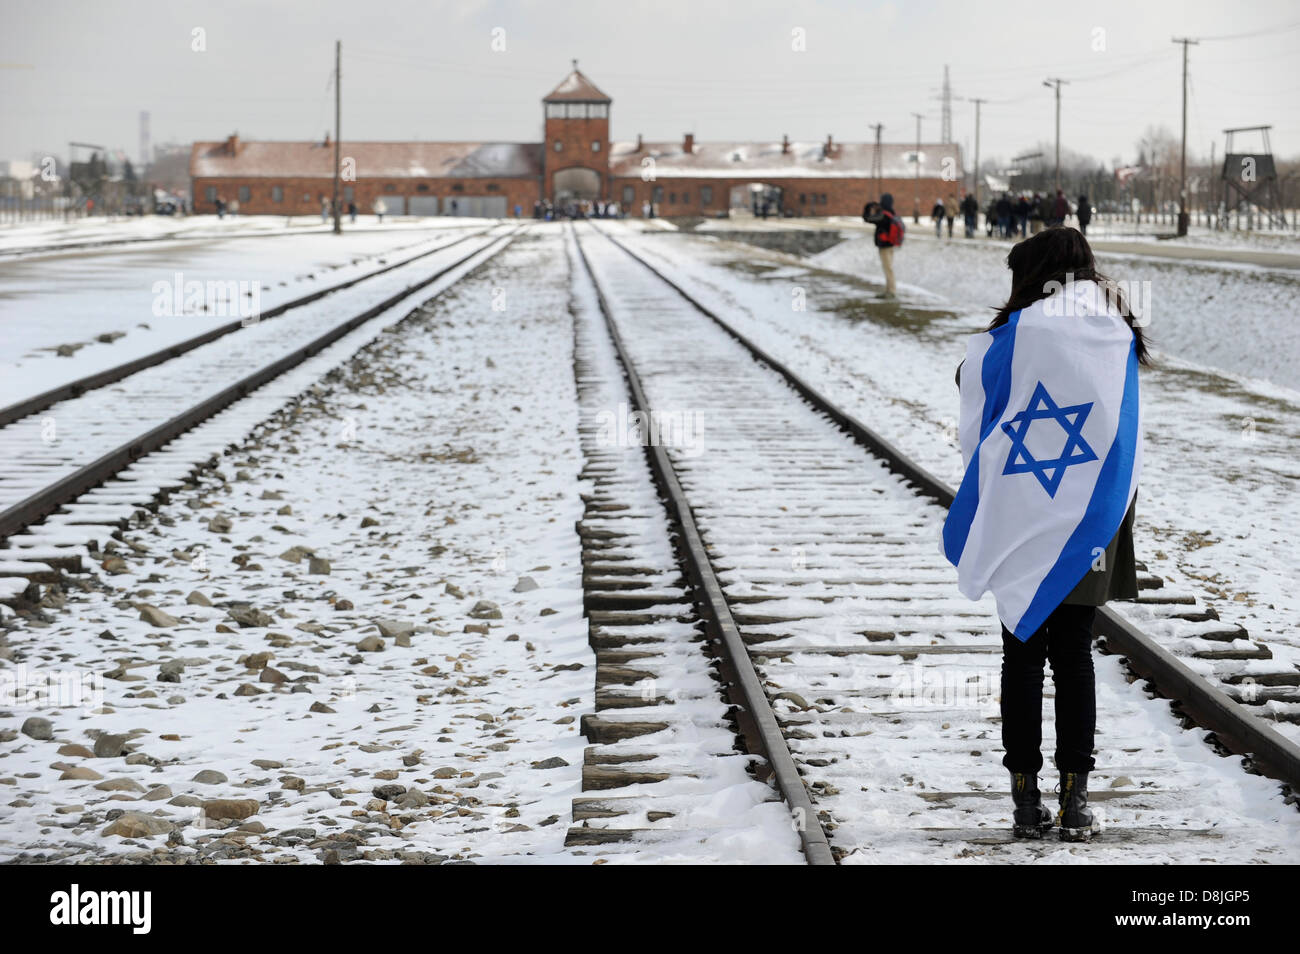 Oswiecim Polonia Auschwitz Birkenau II, campo de concentración del régimen nazi alemán, donde más de 1 millones de judíos fueron asesinados por las SS en cámaras de gas, la mujer Israelí de duelo con la bandera de Israel Foto de stock